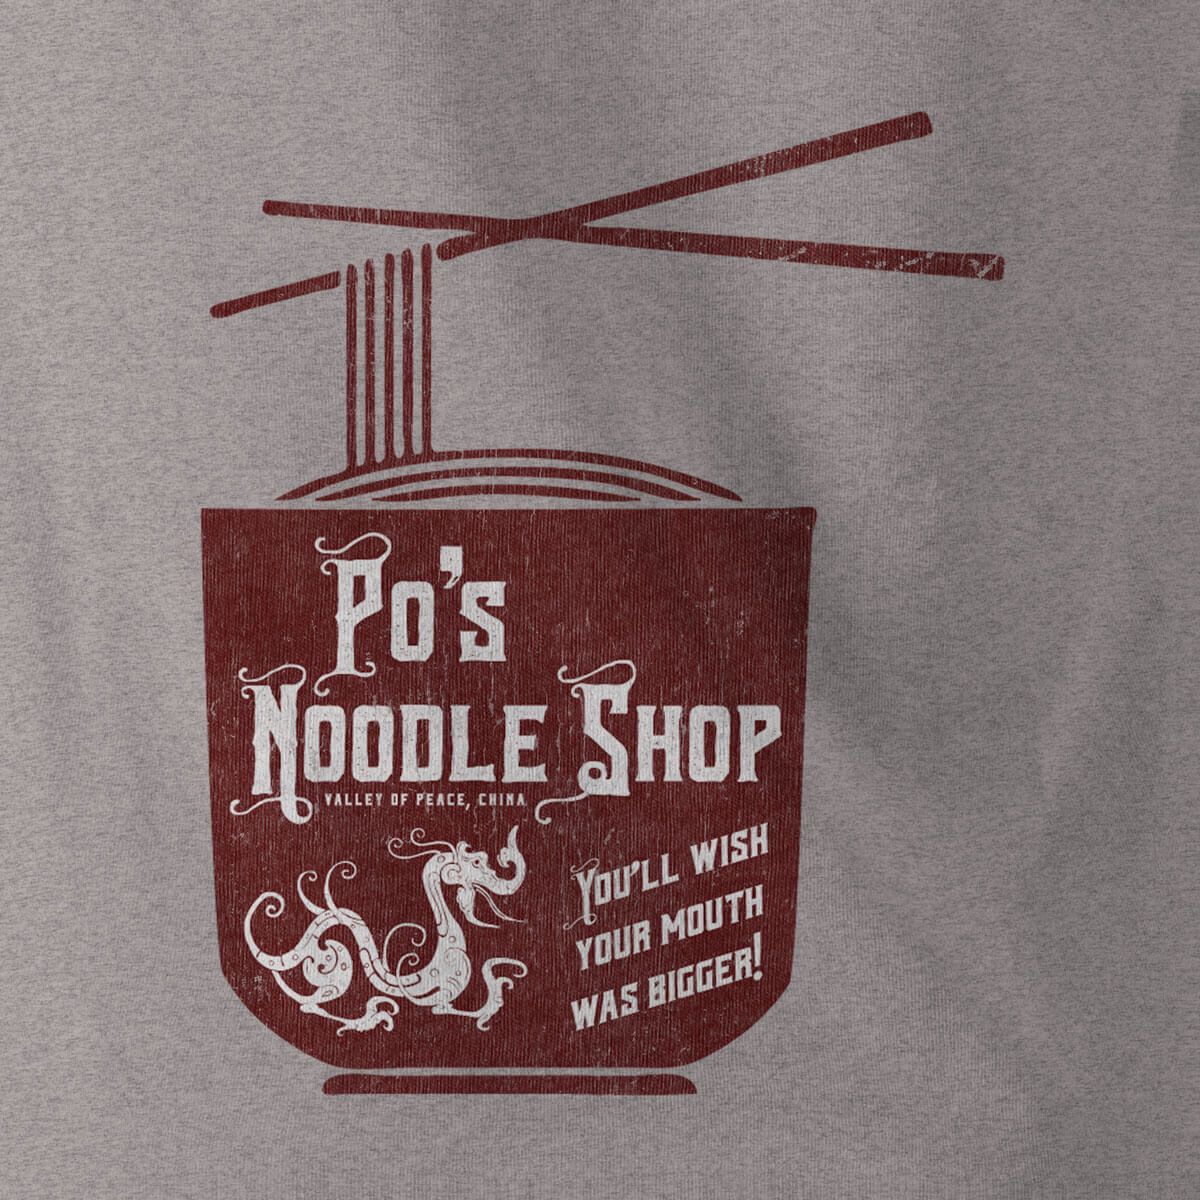 Dreamworks Animation kung fu panda Po's Noodle Shop dive bar design Marianne Cothern logo